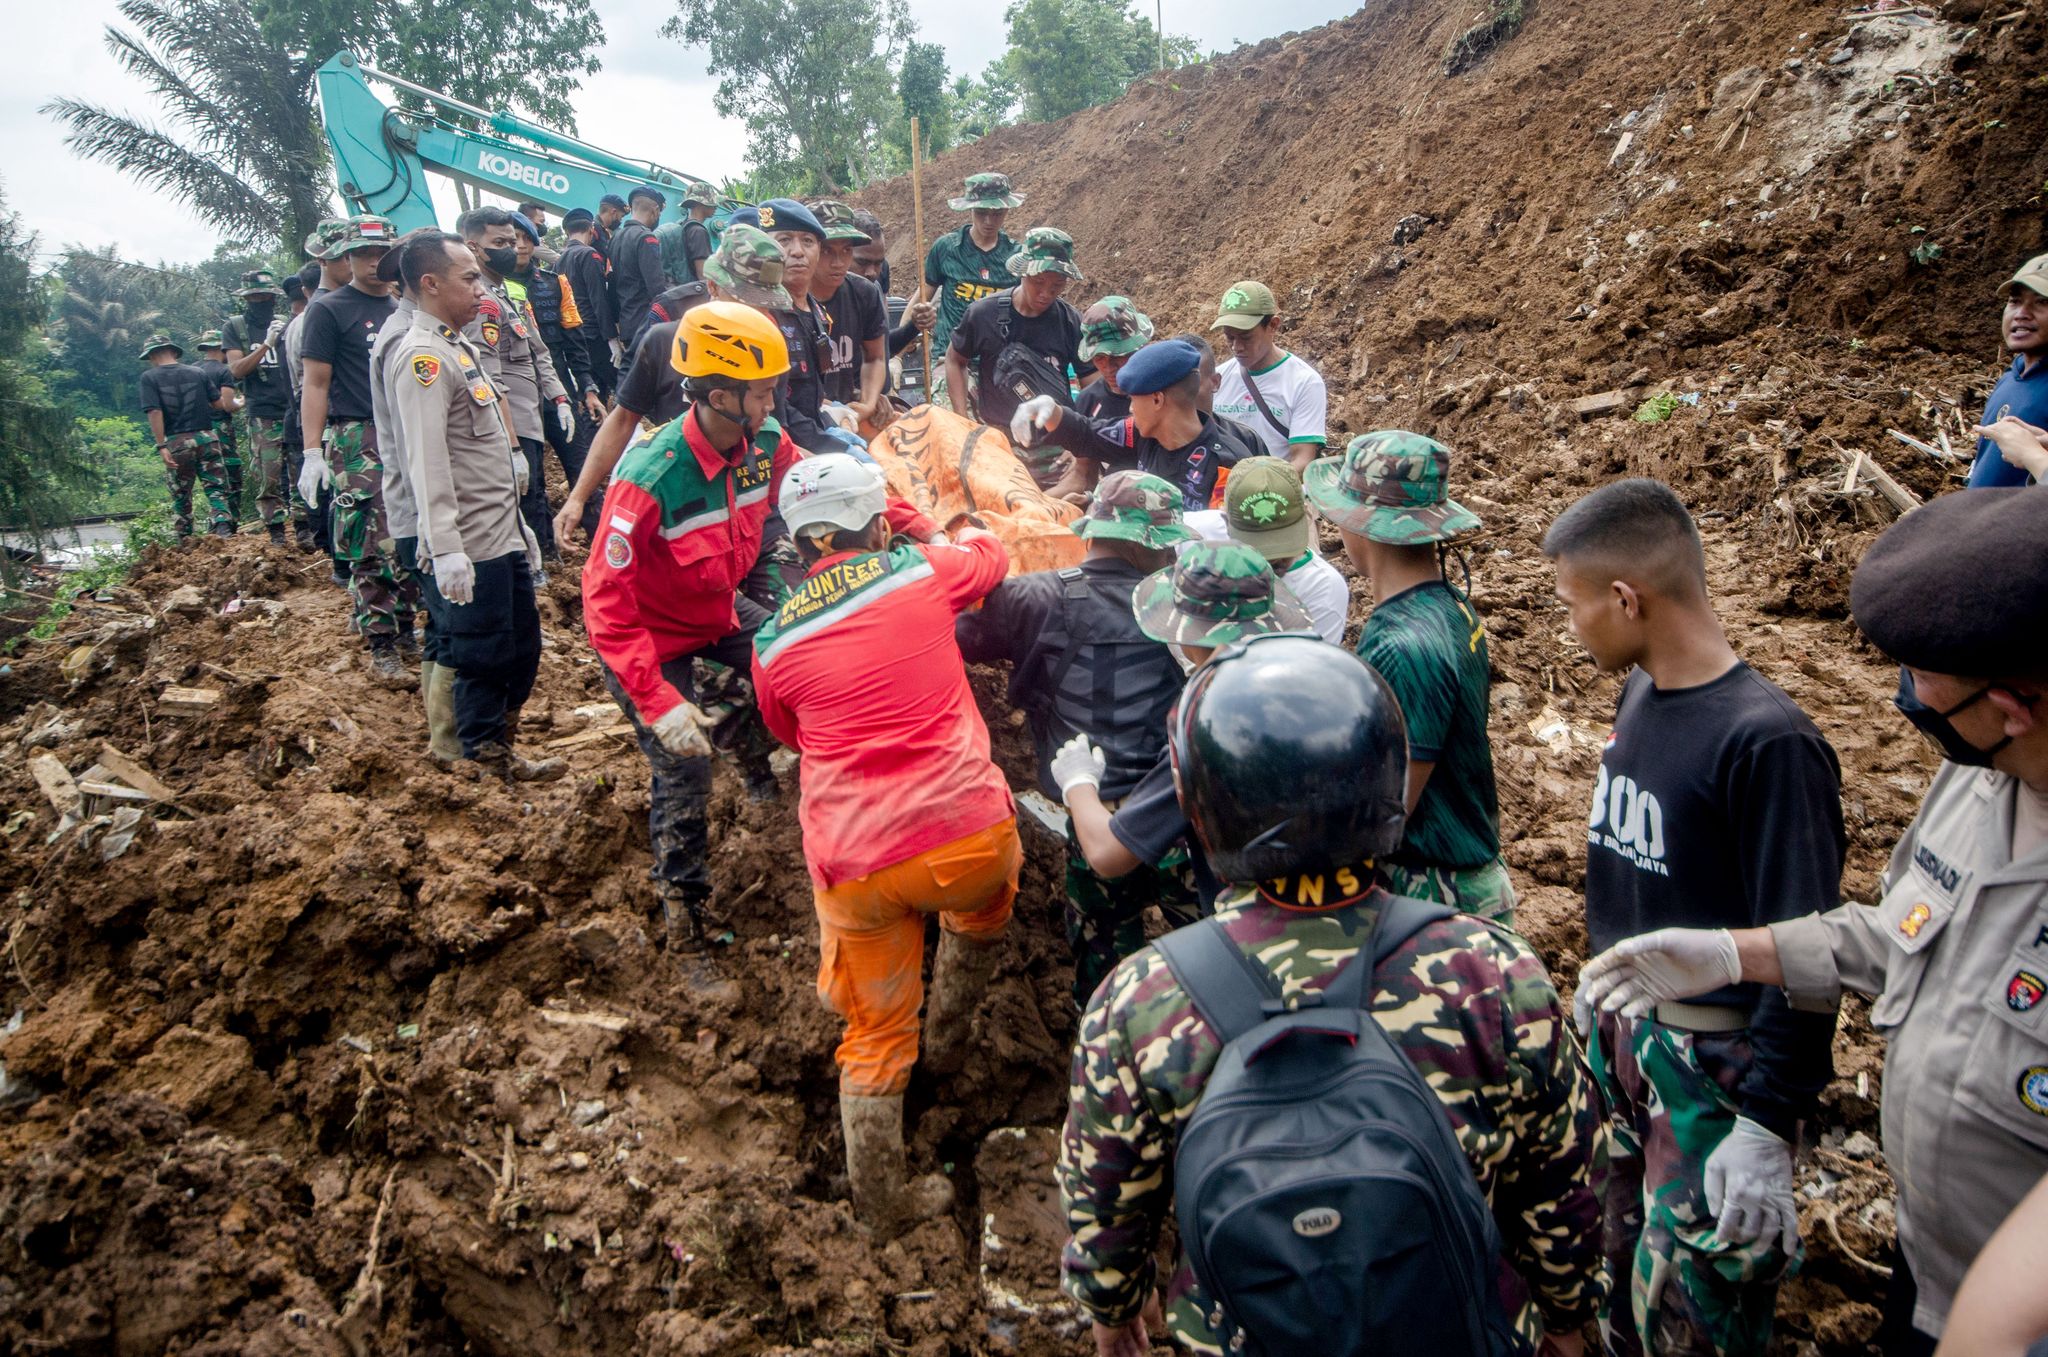 Bei dem Erdbeben der Stärke 5,6 starben mehr als 270 Menschen, darunter auch viele Kinder. (© Septianjar Muharam/XinHua/dpa)